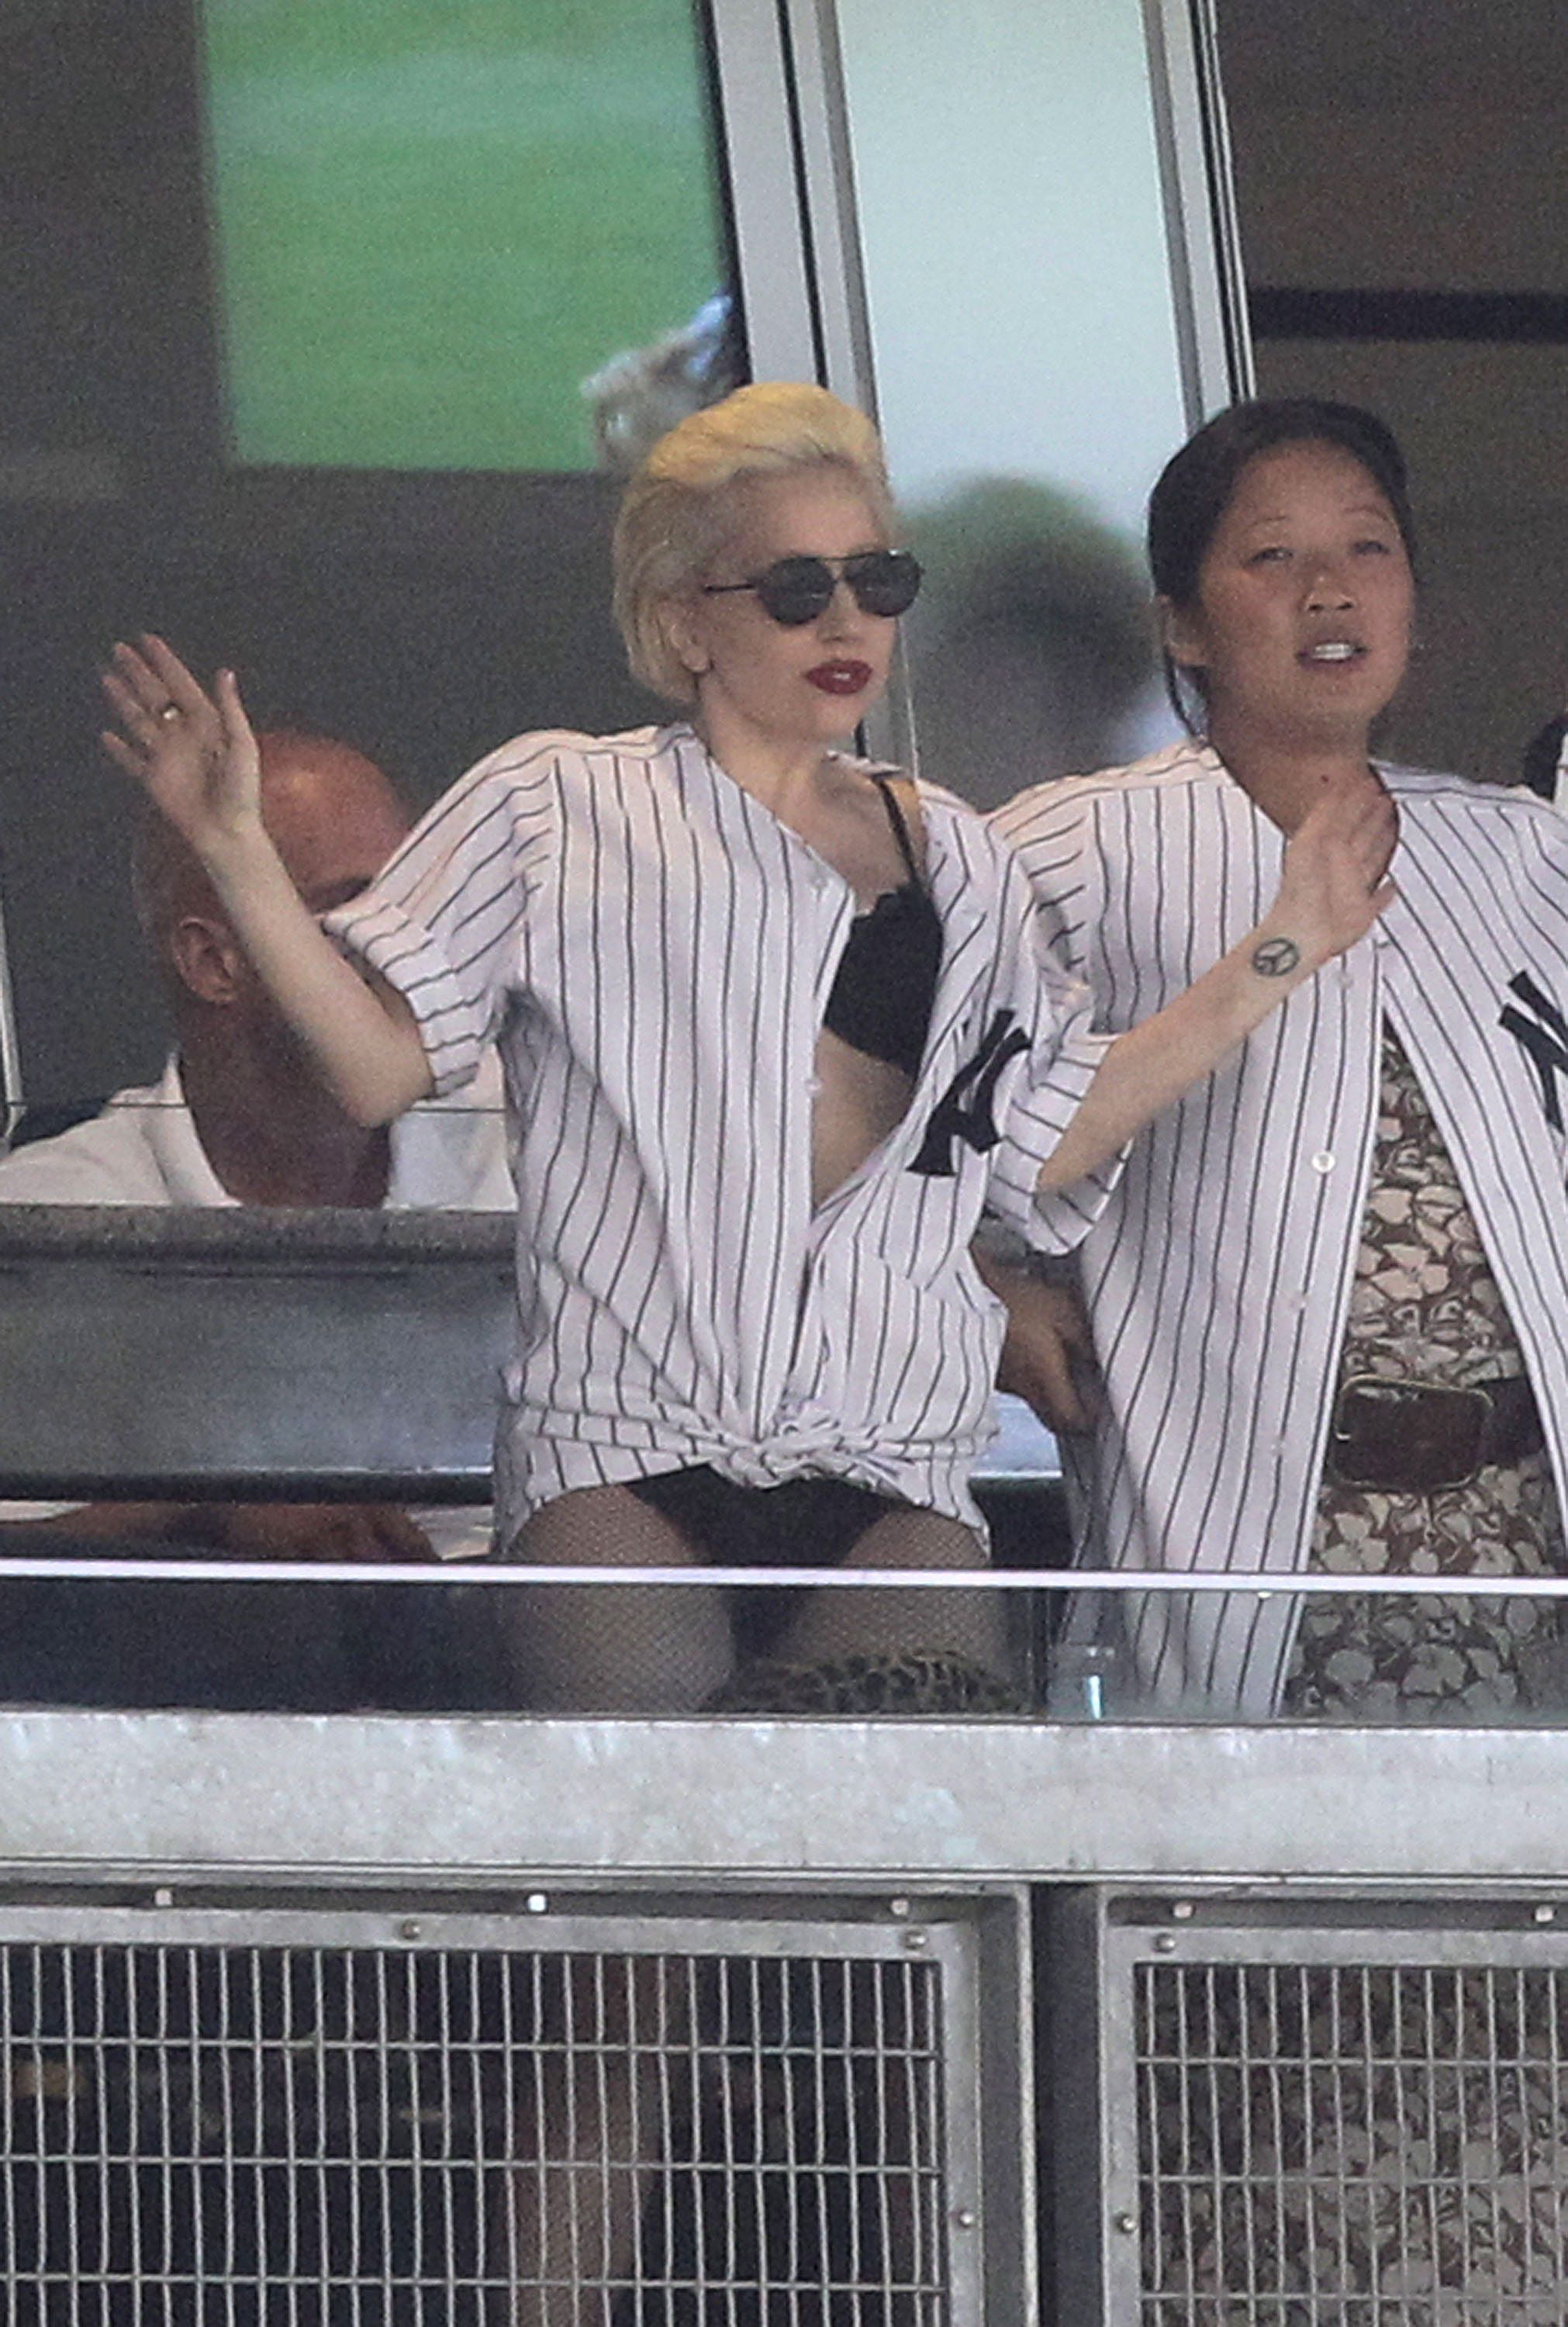 Bad Romance Lady Gaga - Lady Gaga Yankee Baseball Game Outfit - Lady Gaga No Pants ...